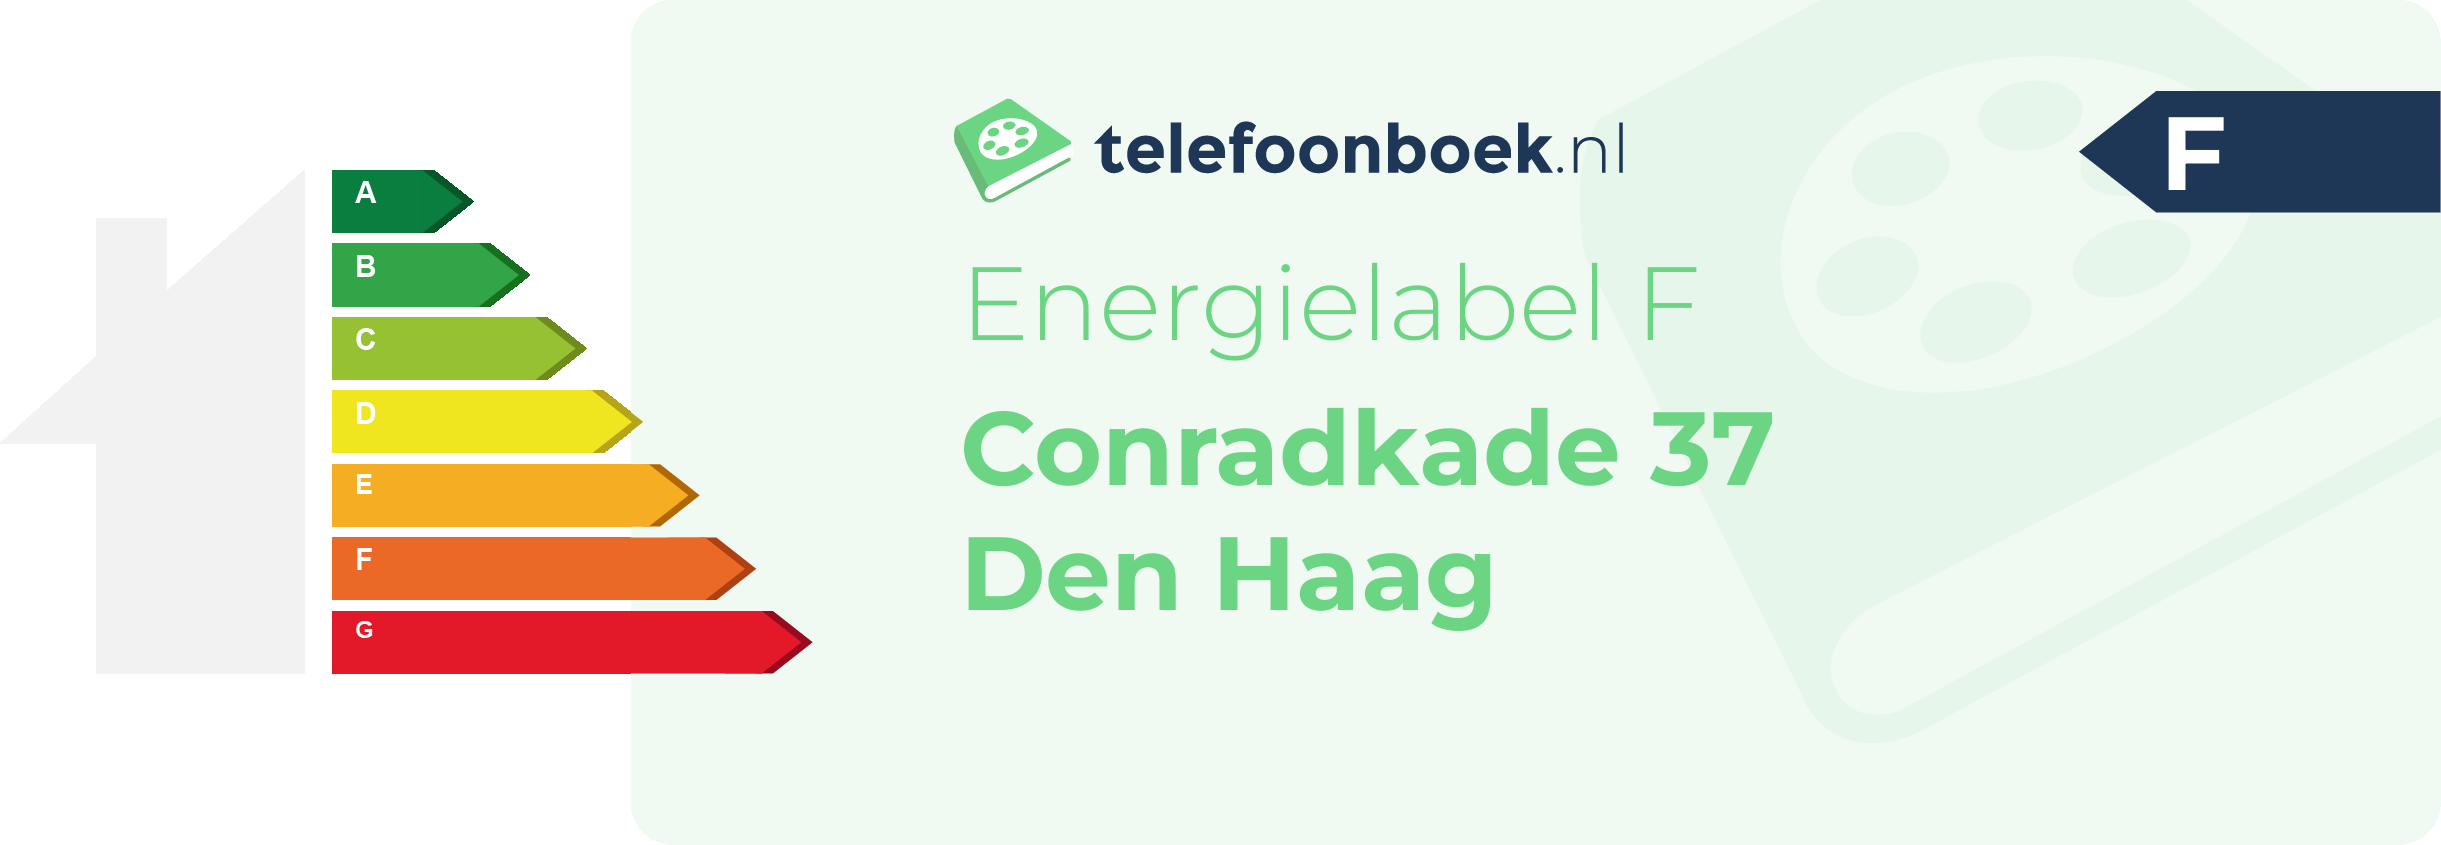 Energielabel Conradkade 37 Den Haag